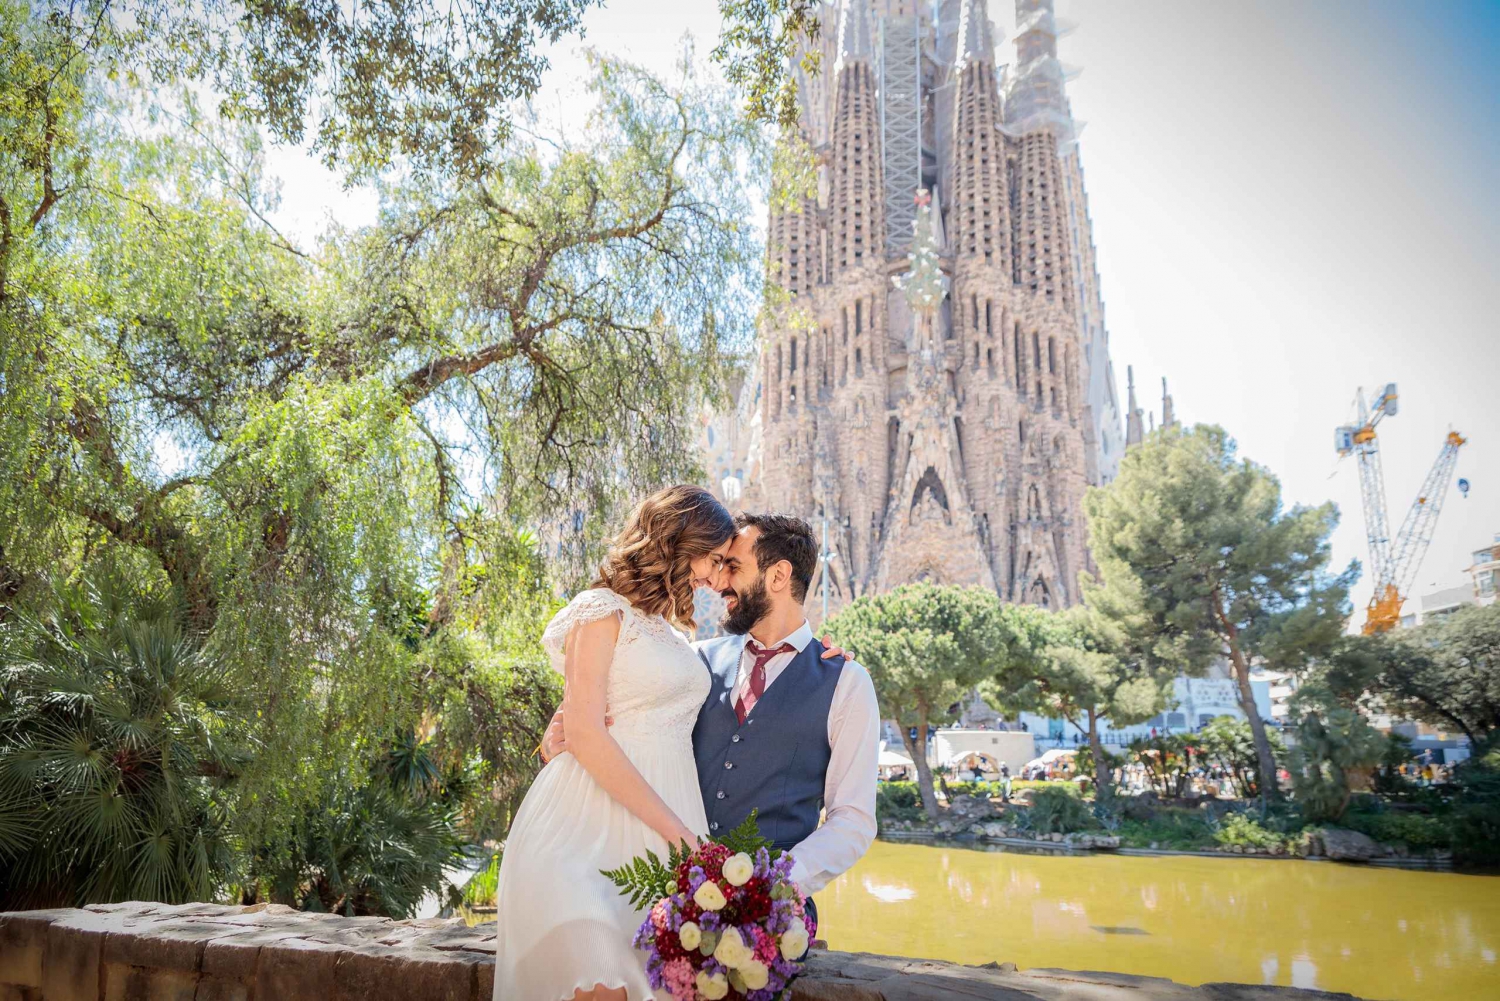 Barcelona: Sessão de fotos particular na Sagrada Família